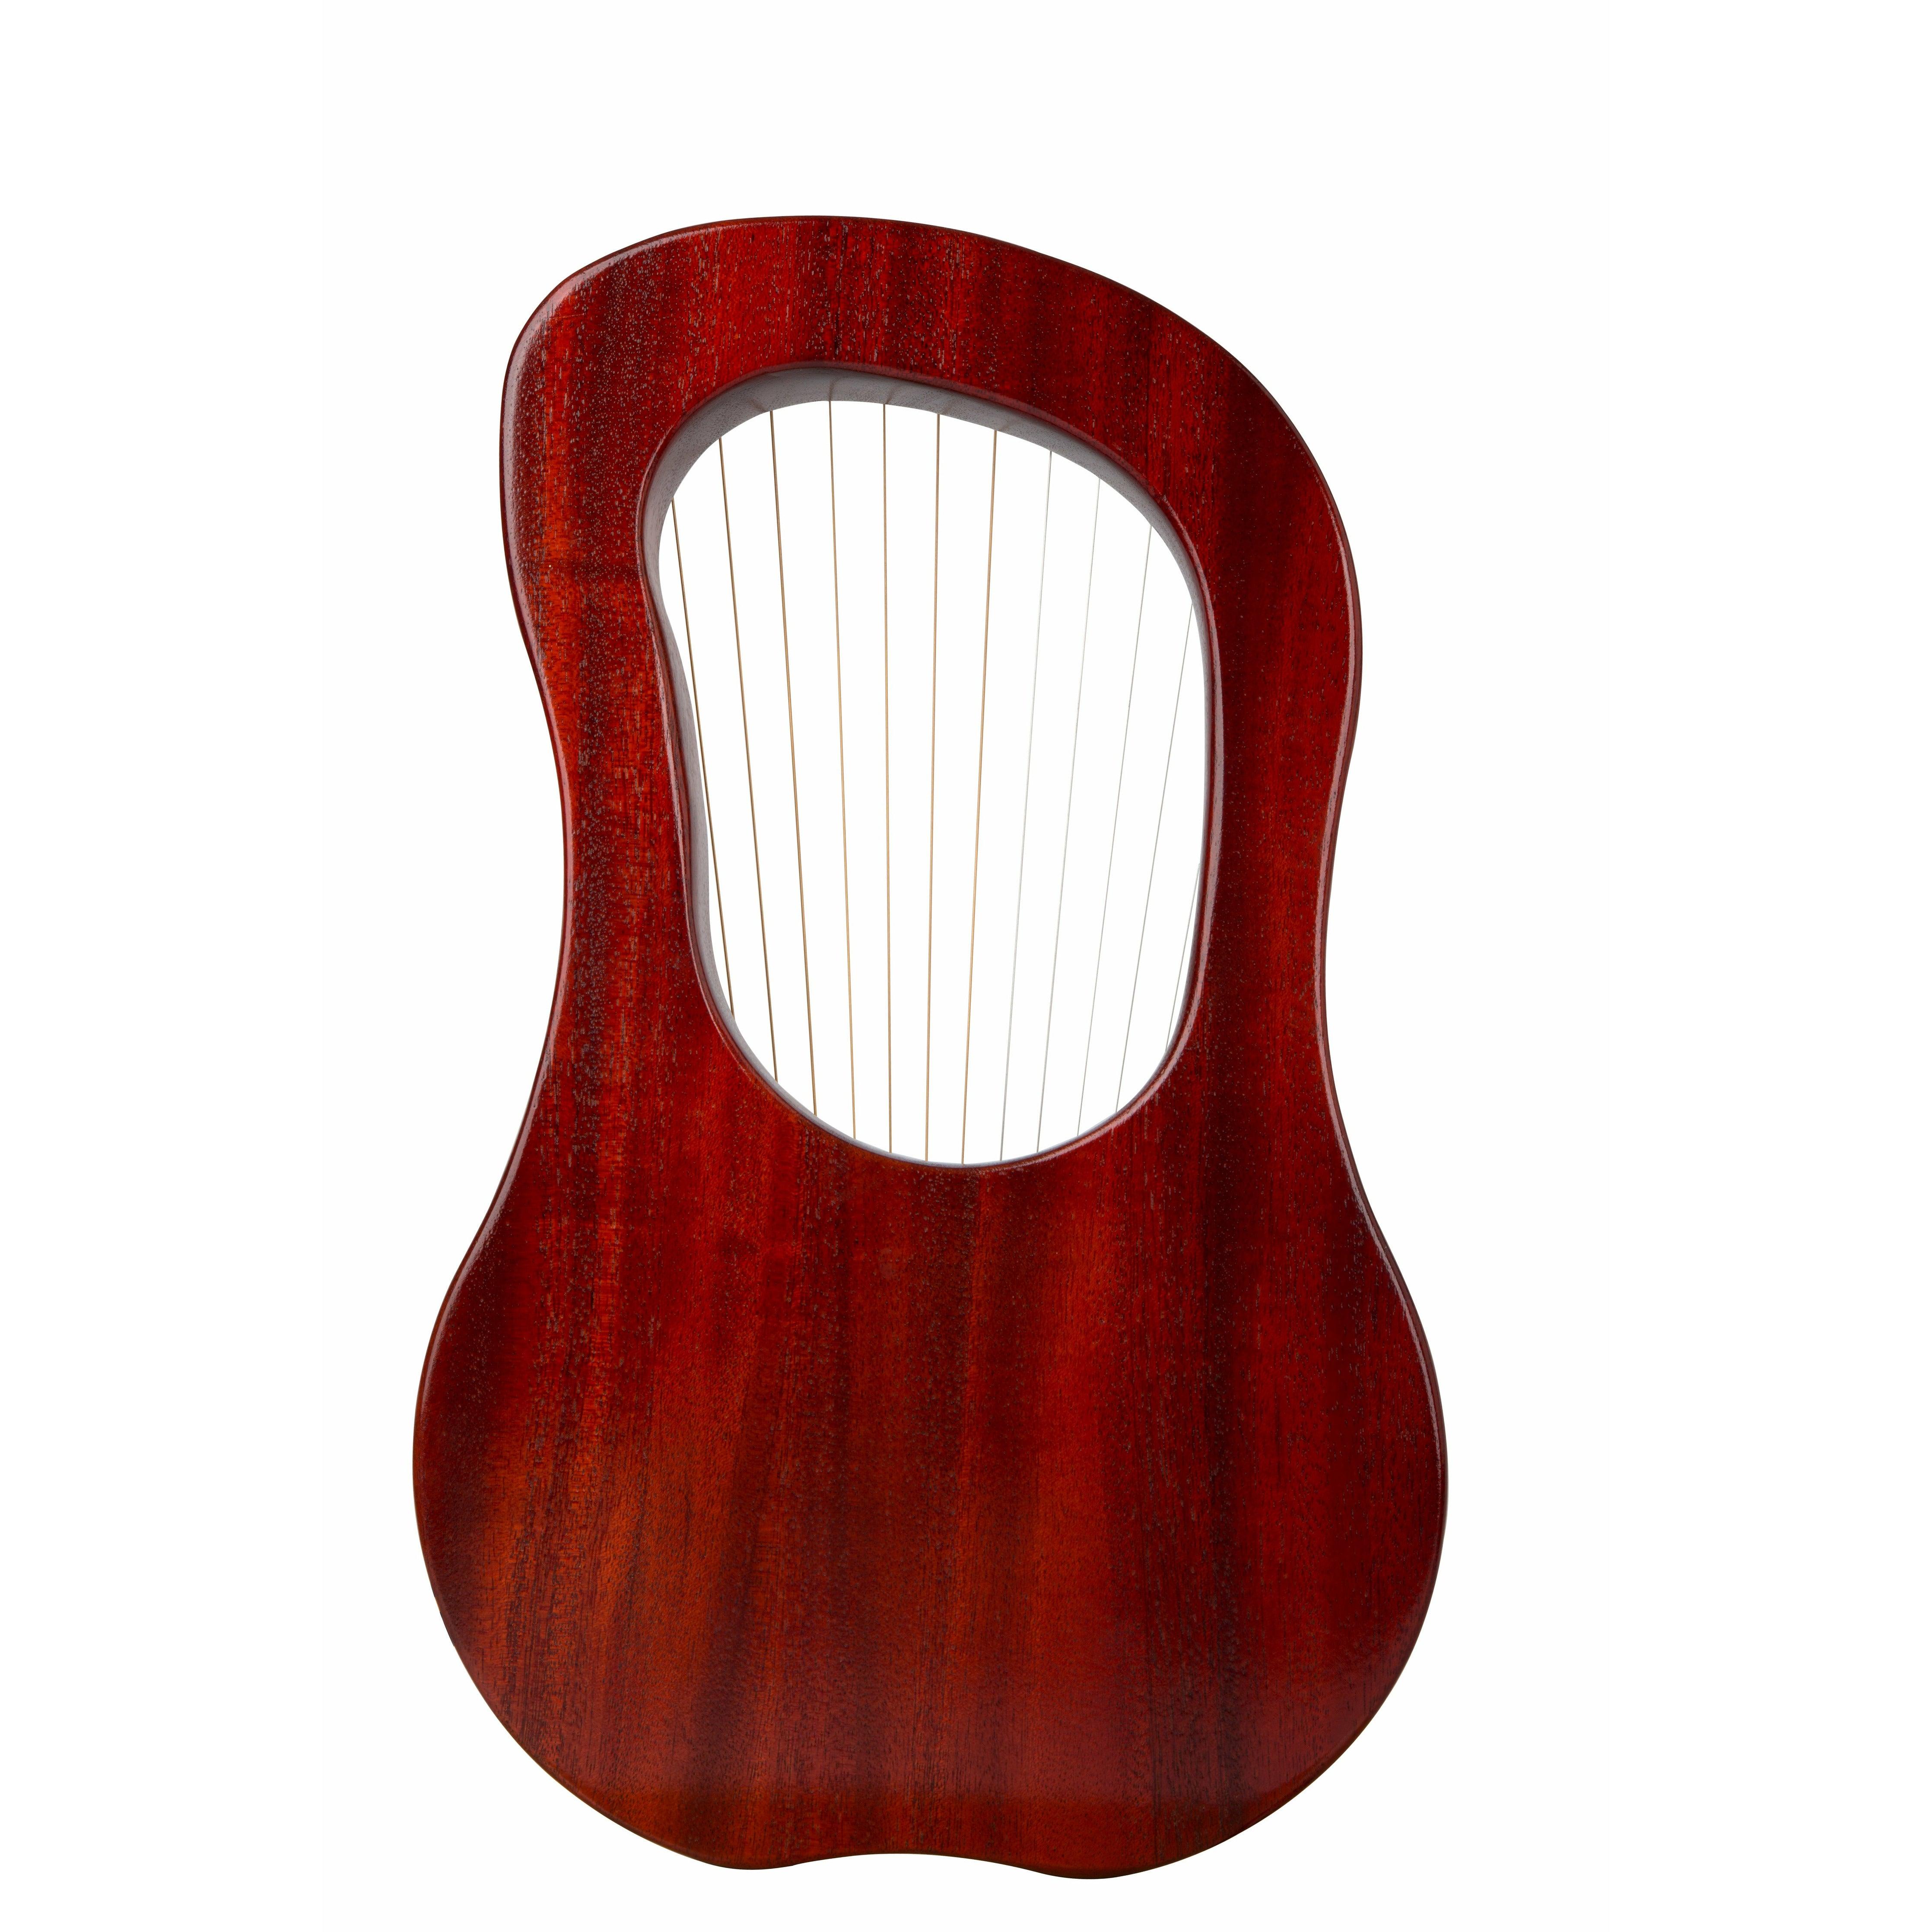 Lyre Harp 15 String GECKO Classic Mahogany with Bag, musical instrument mini harp Irish harp buy harp Australia